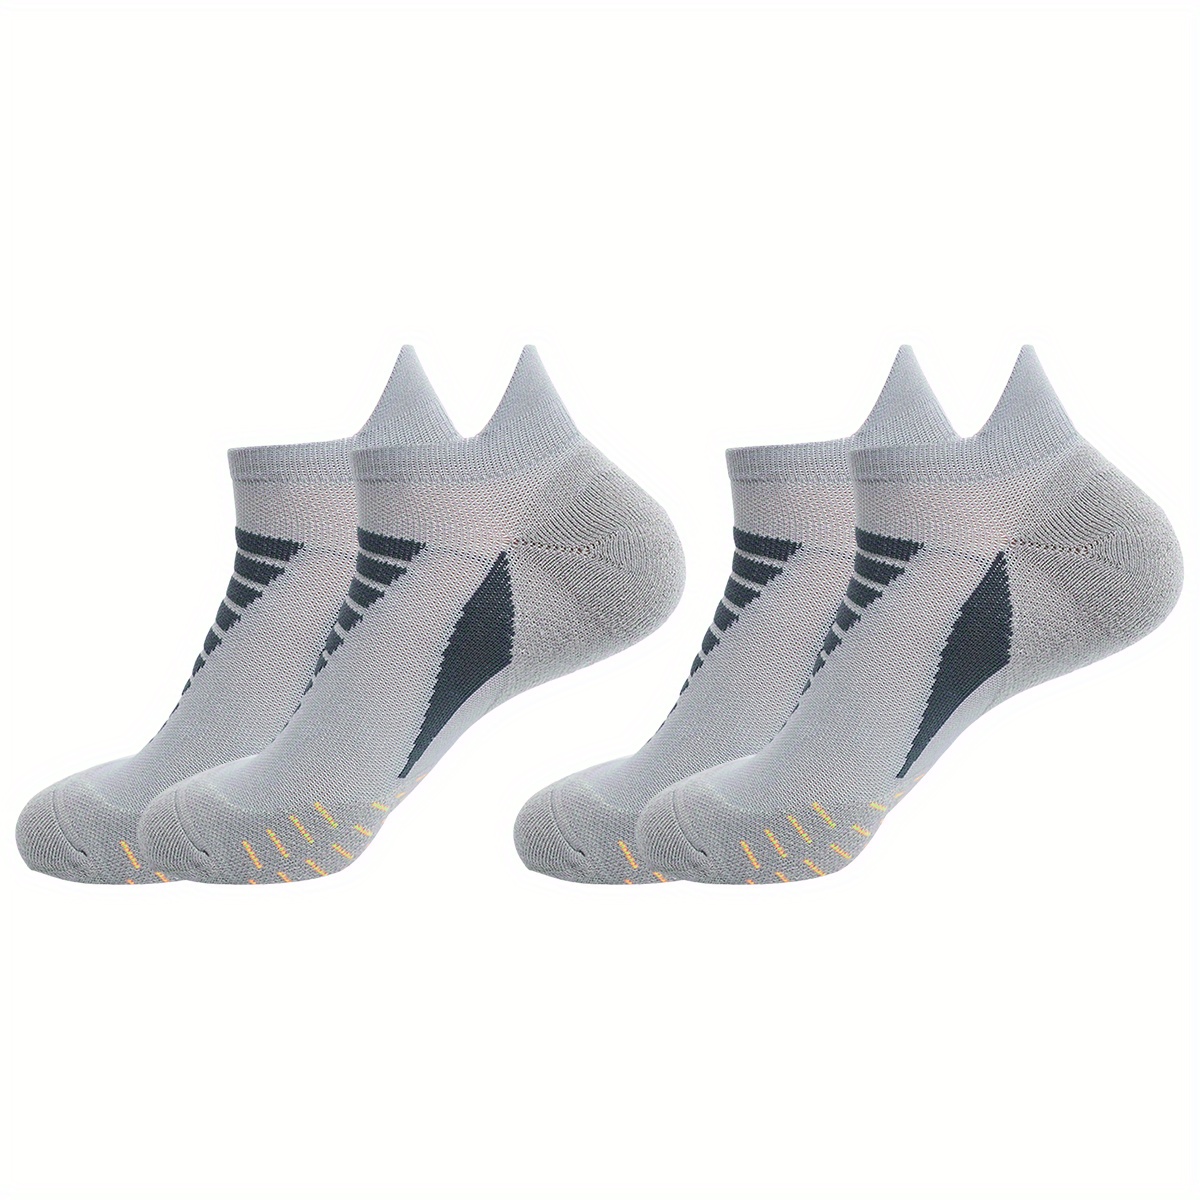 Calcetines 3 pares de calcetines de senderismo acolchados para